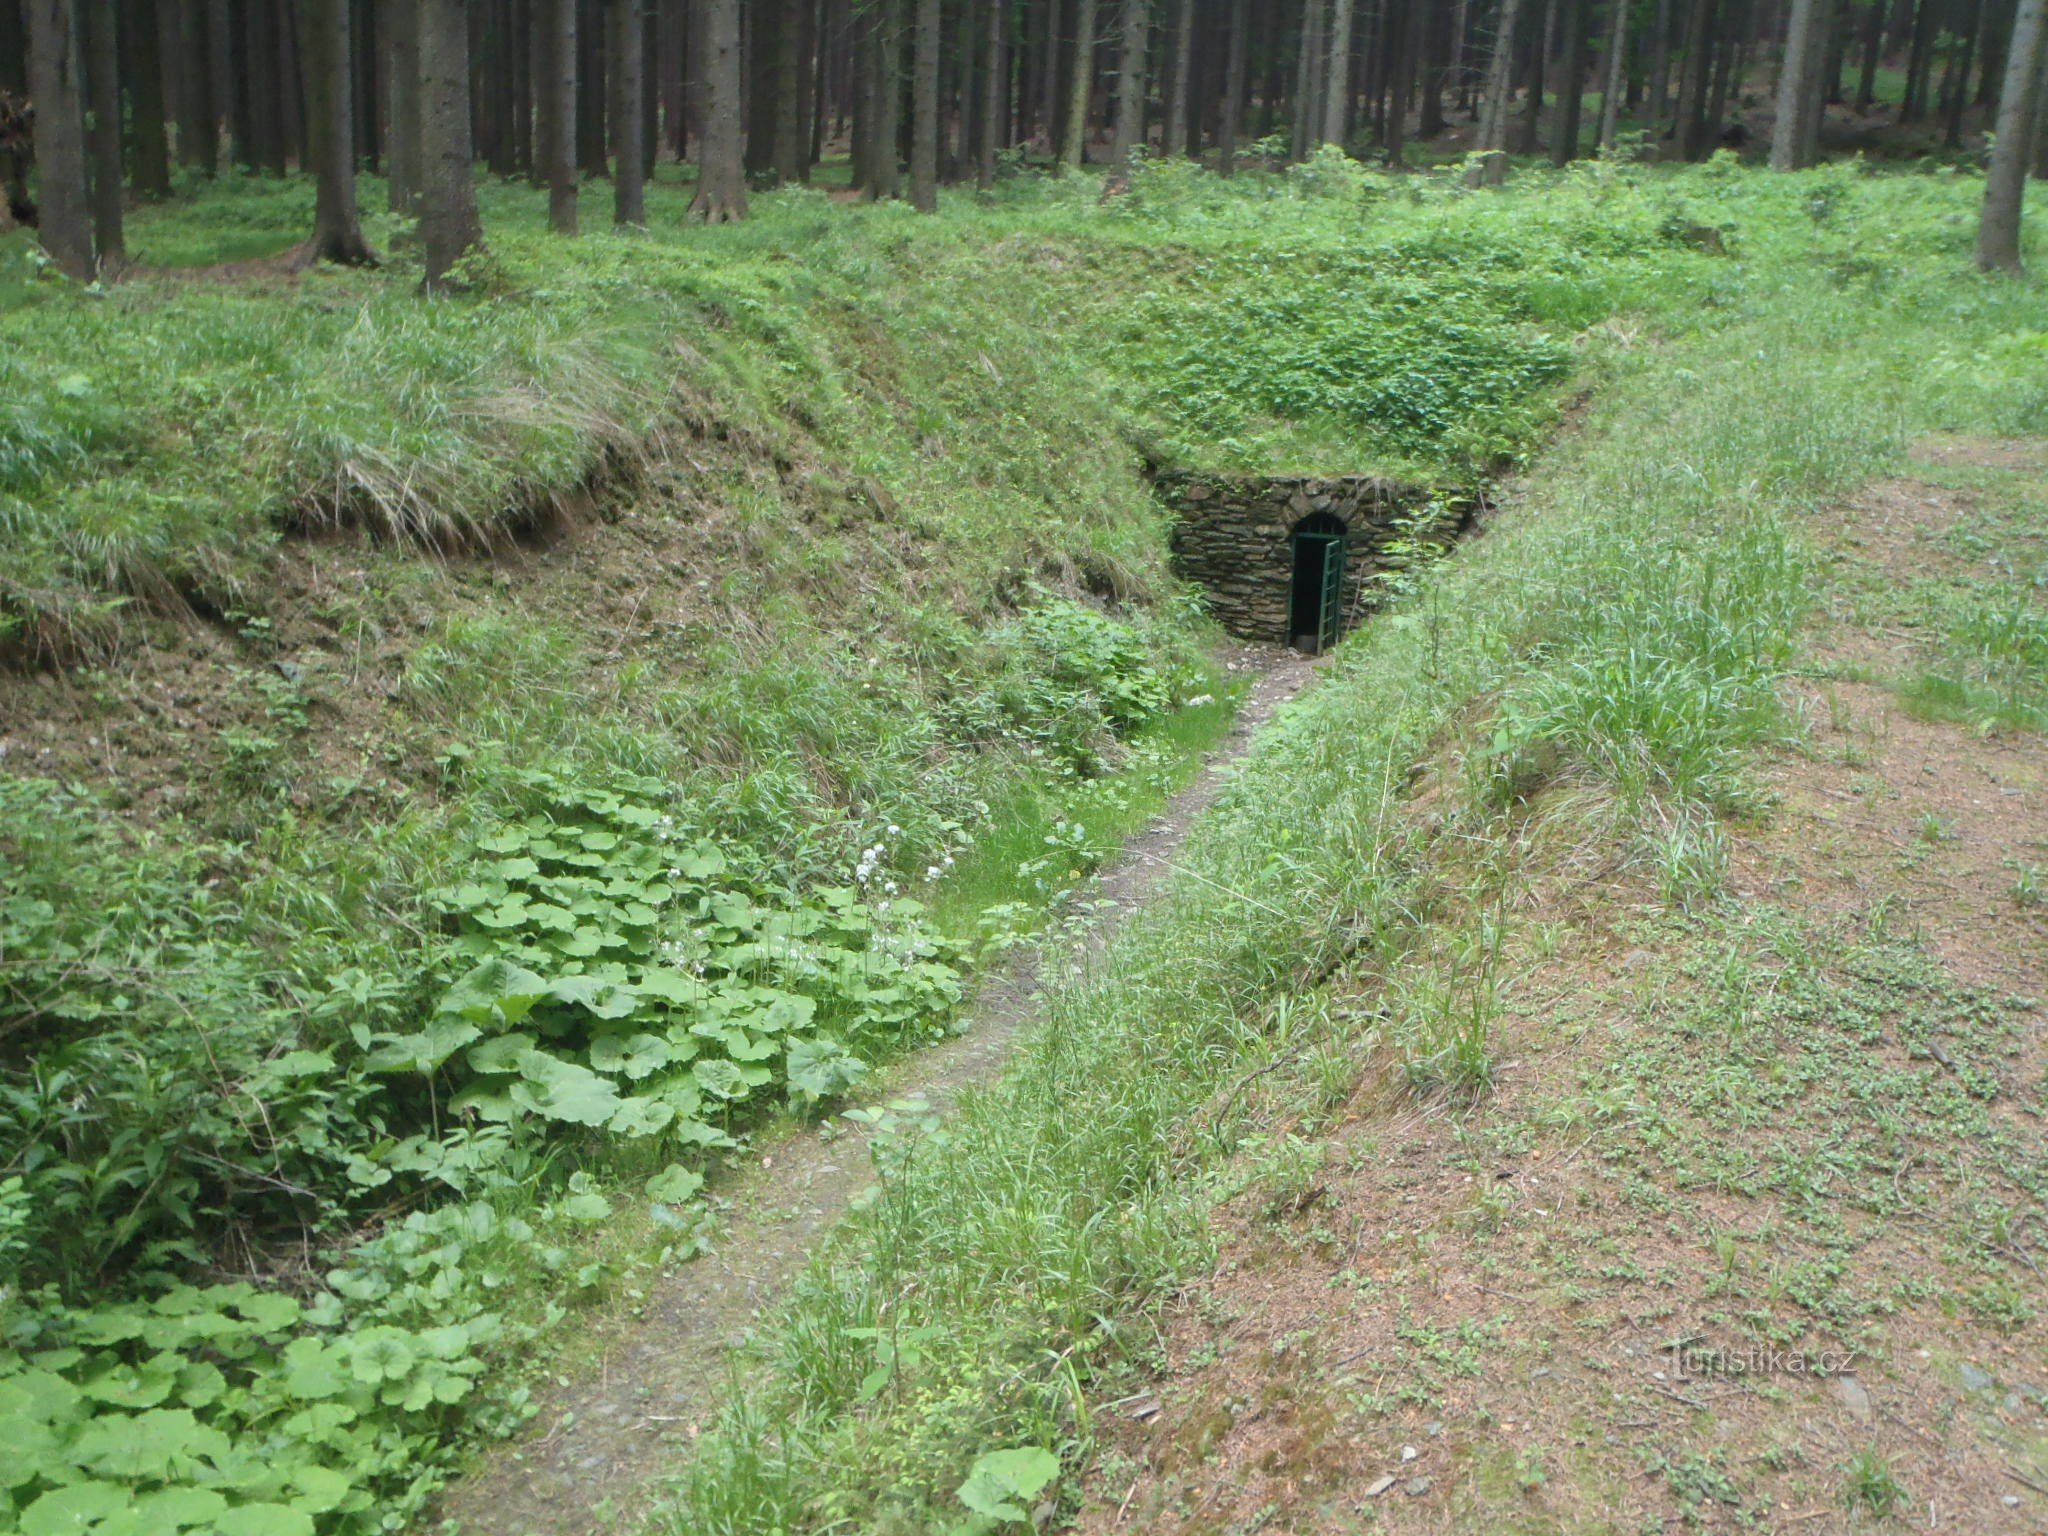 Tunel miedziany